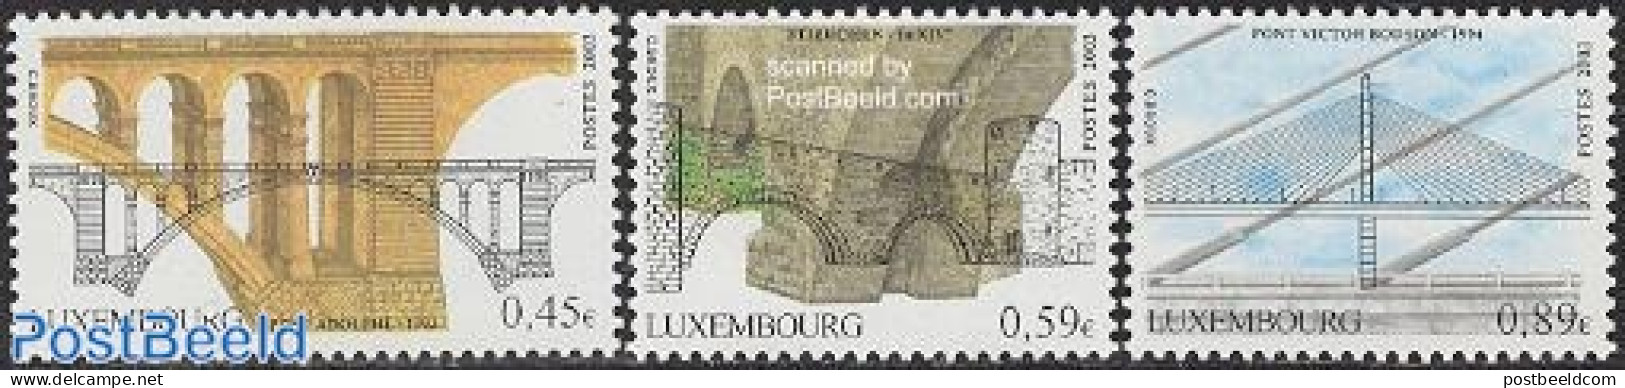 Luxemburg 2003 Bridges 3v, Mint NH, Art - Bridges And Tunnels - Unused Stamps